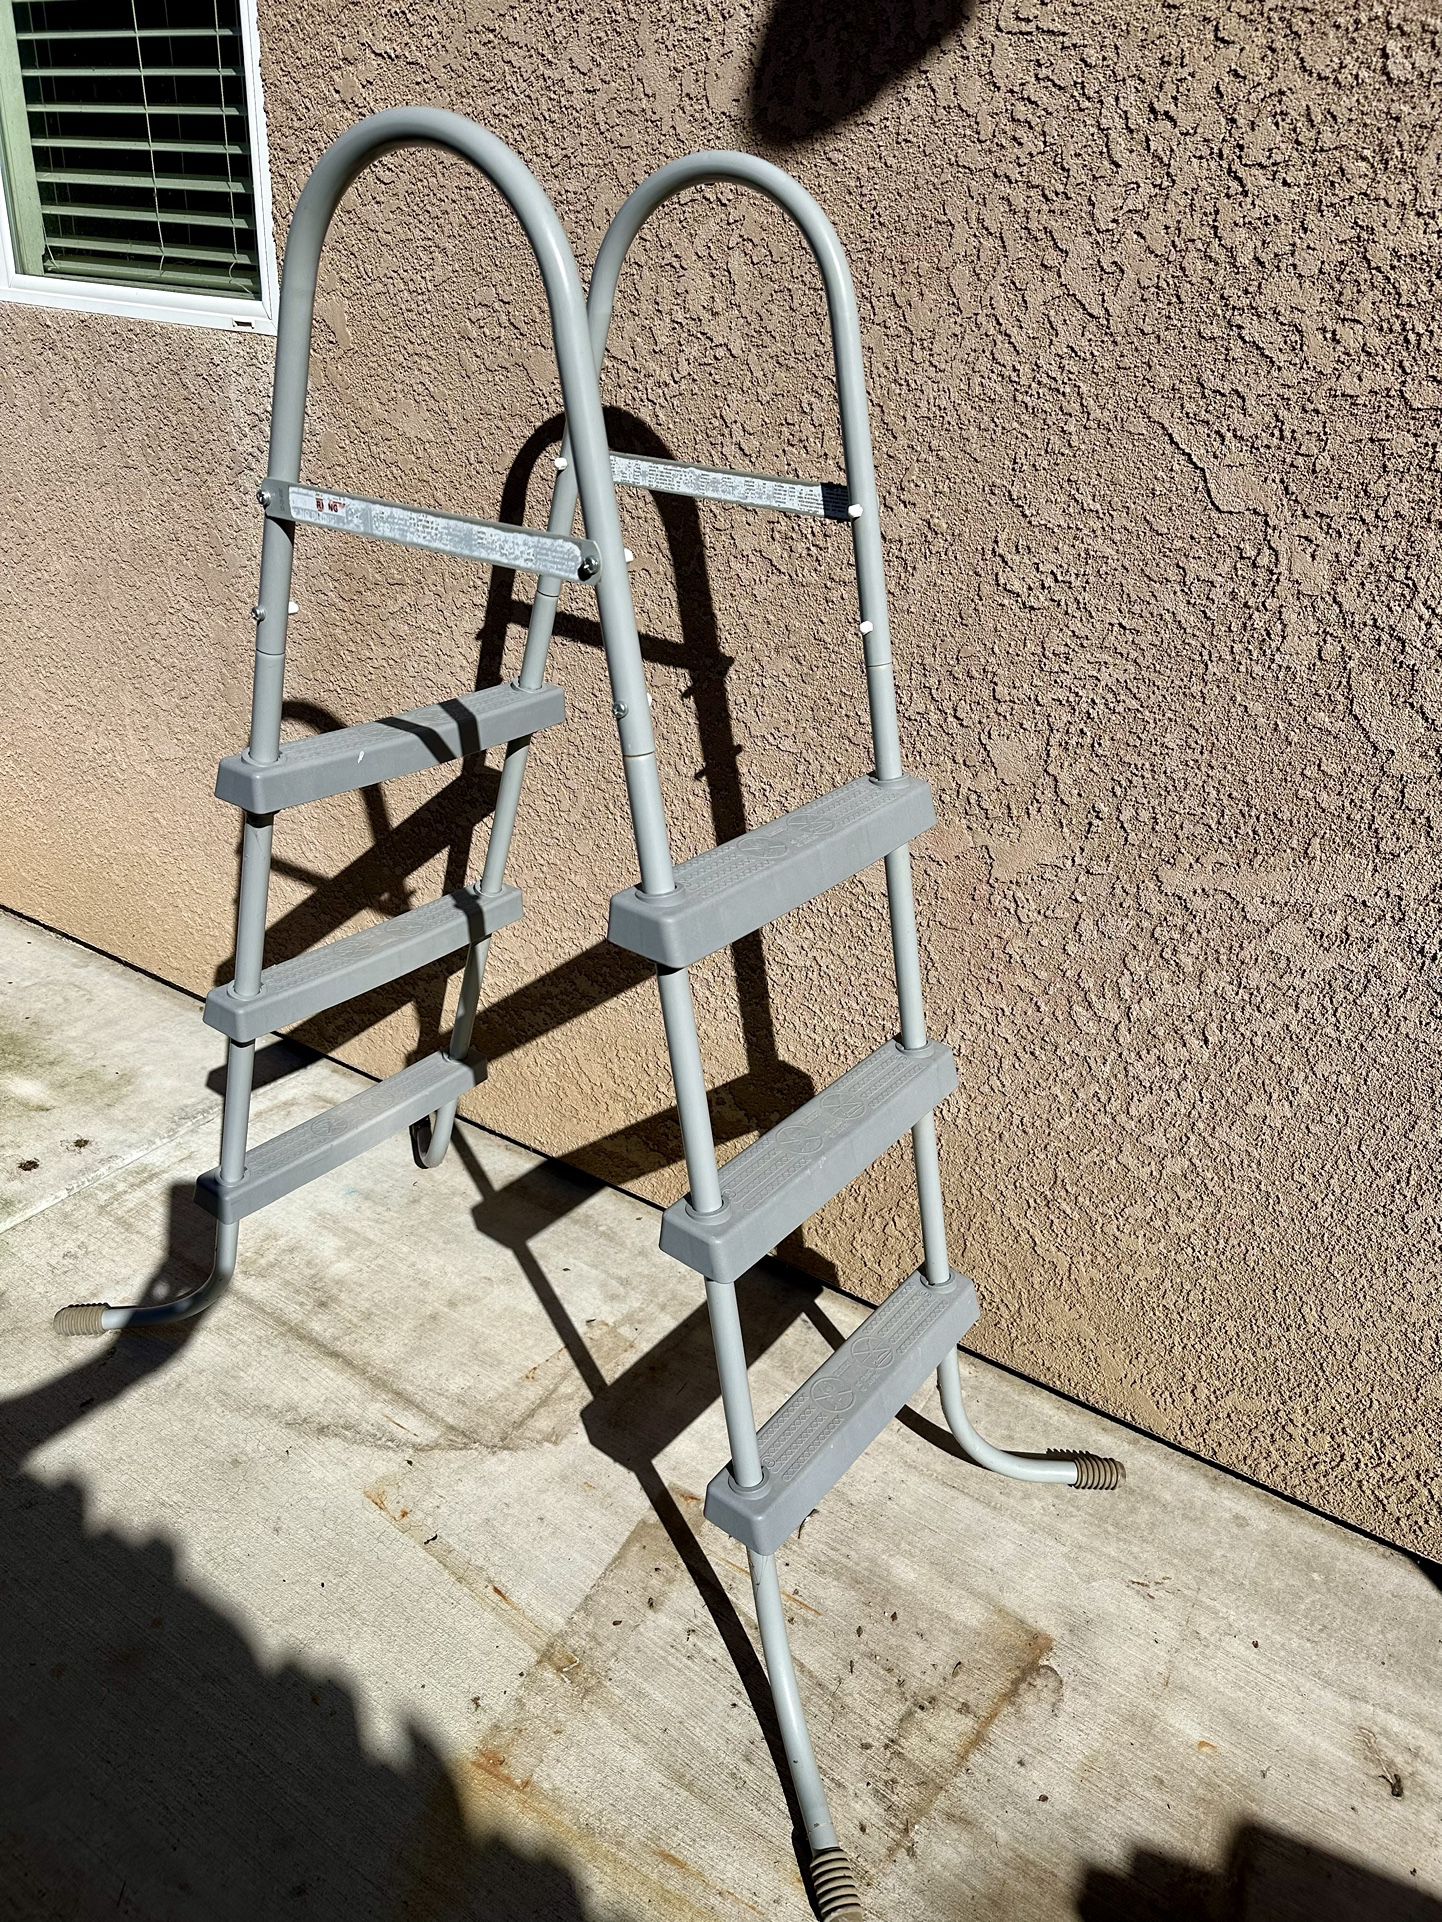 Pool Ladder 53” Tall